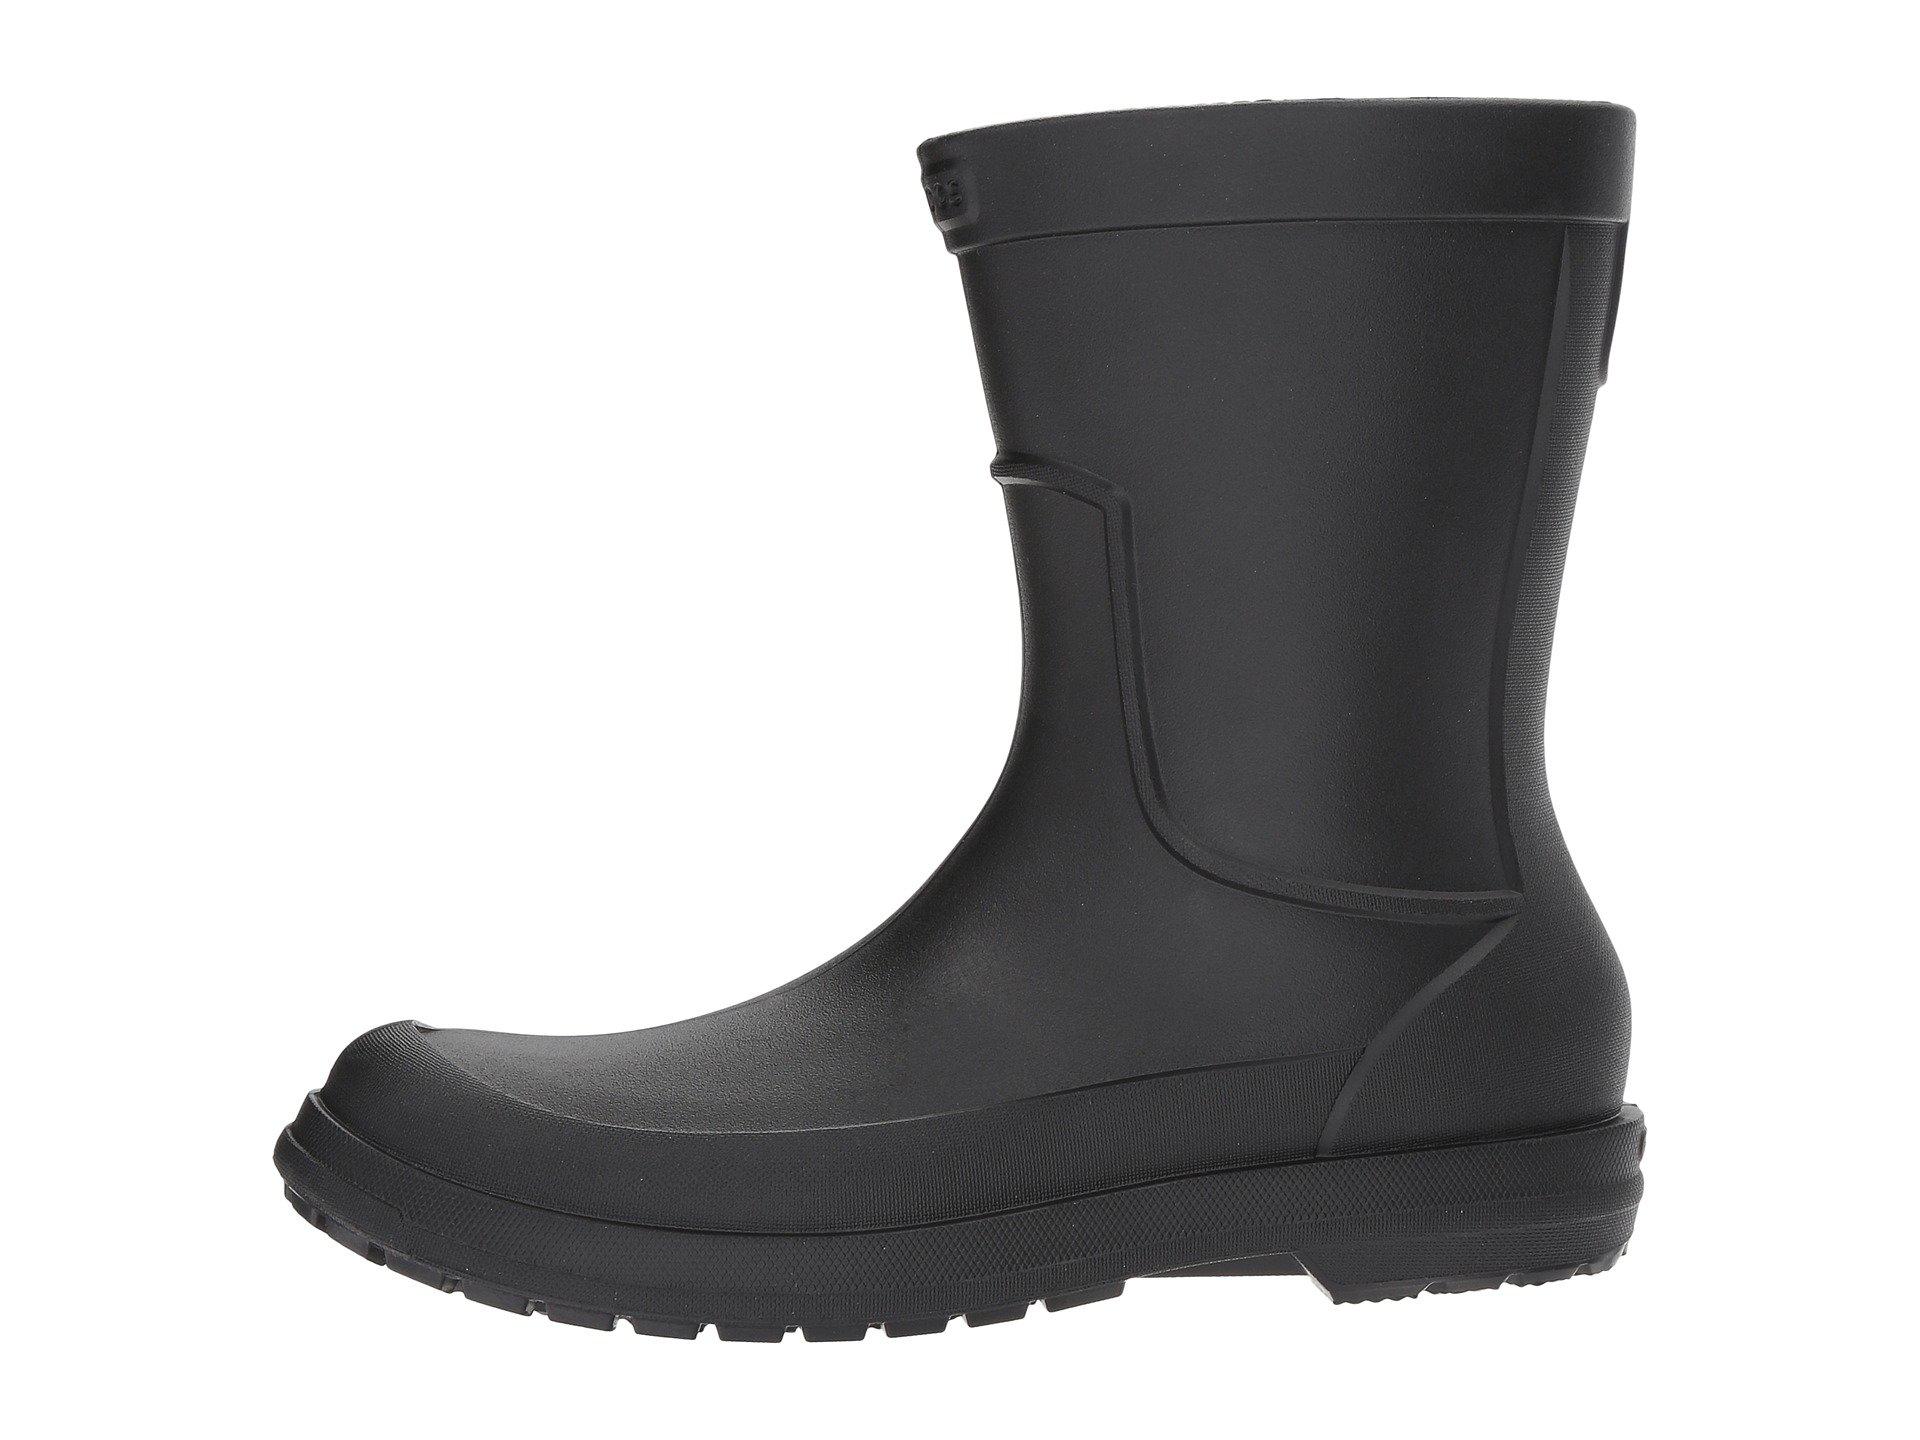 Crocs™ Men's All Cast Rain Boot in Black/Black (Black) for Men - Lyst